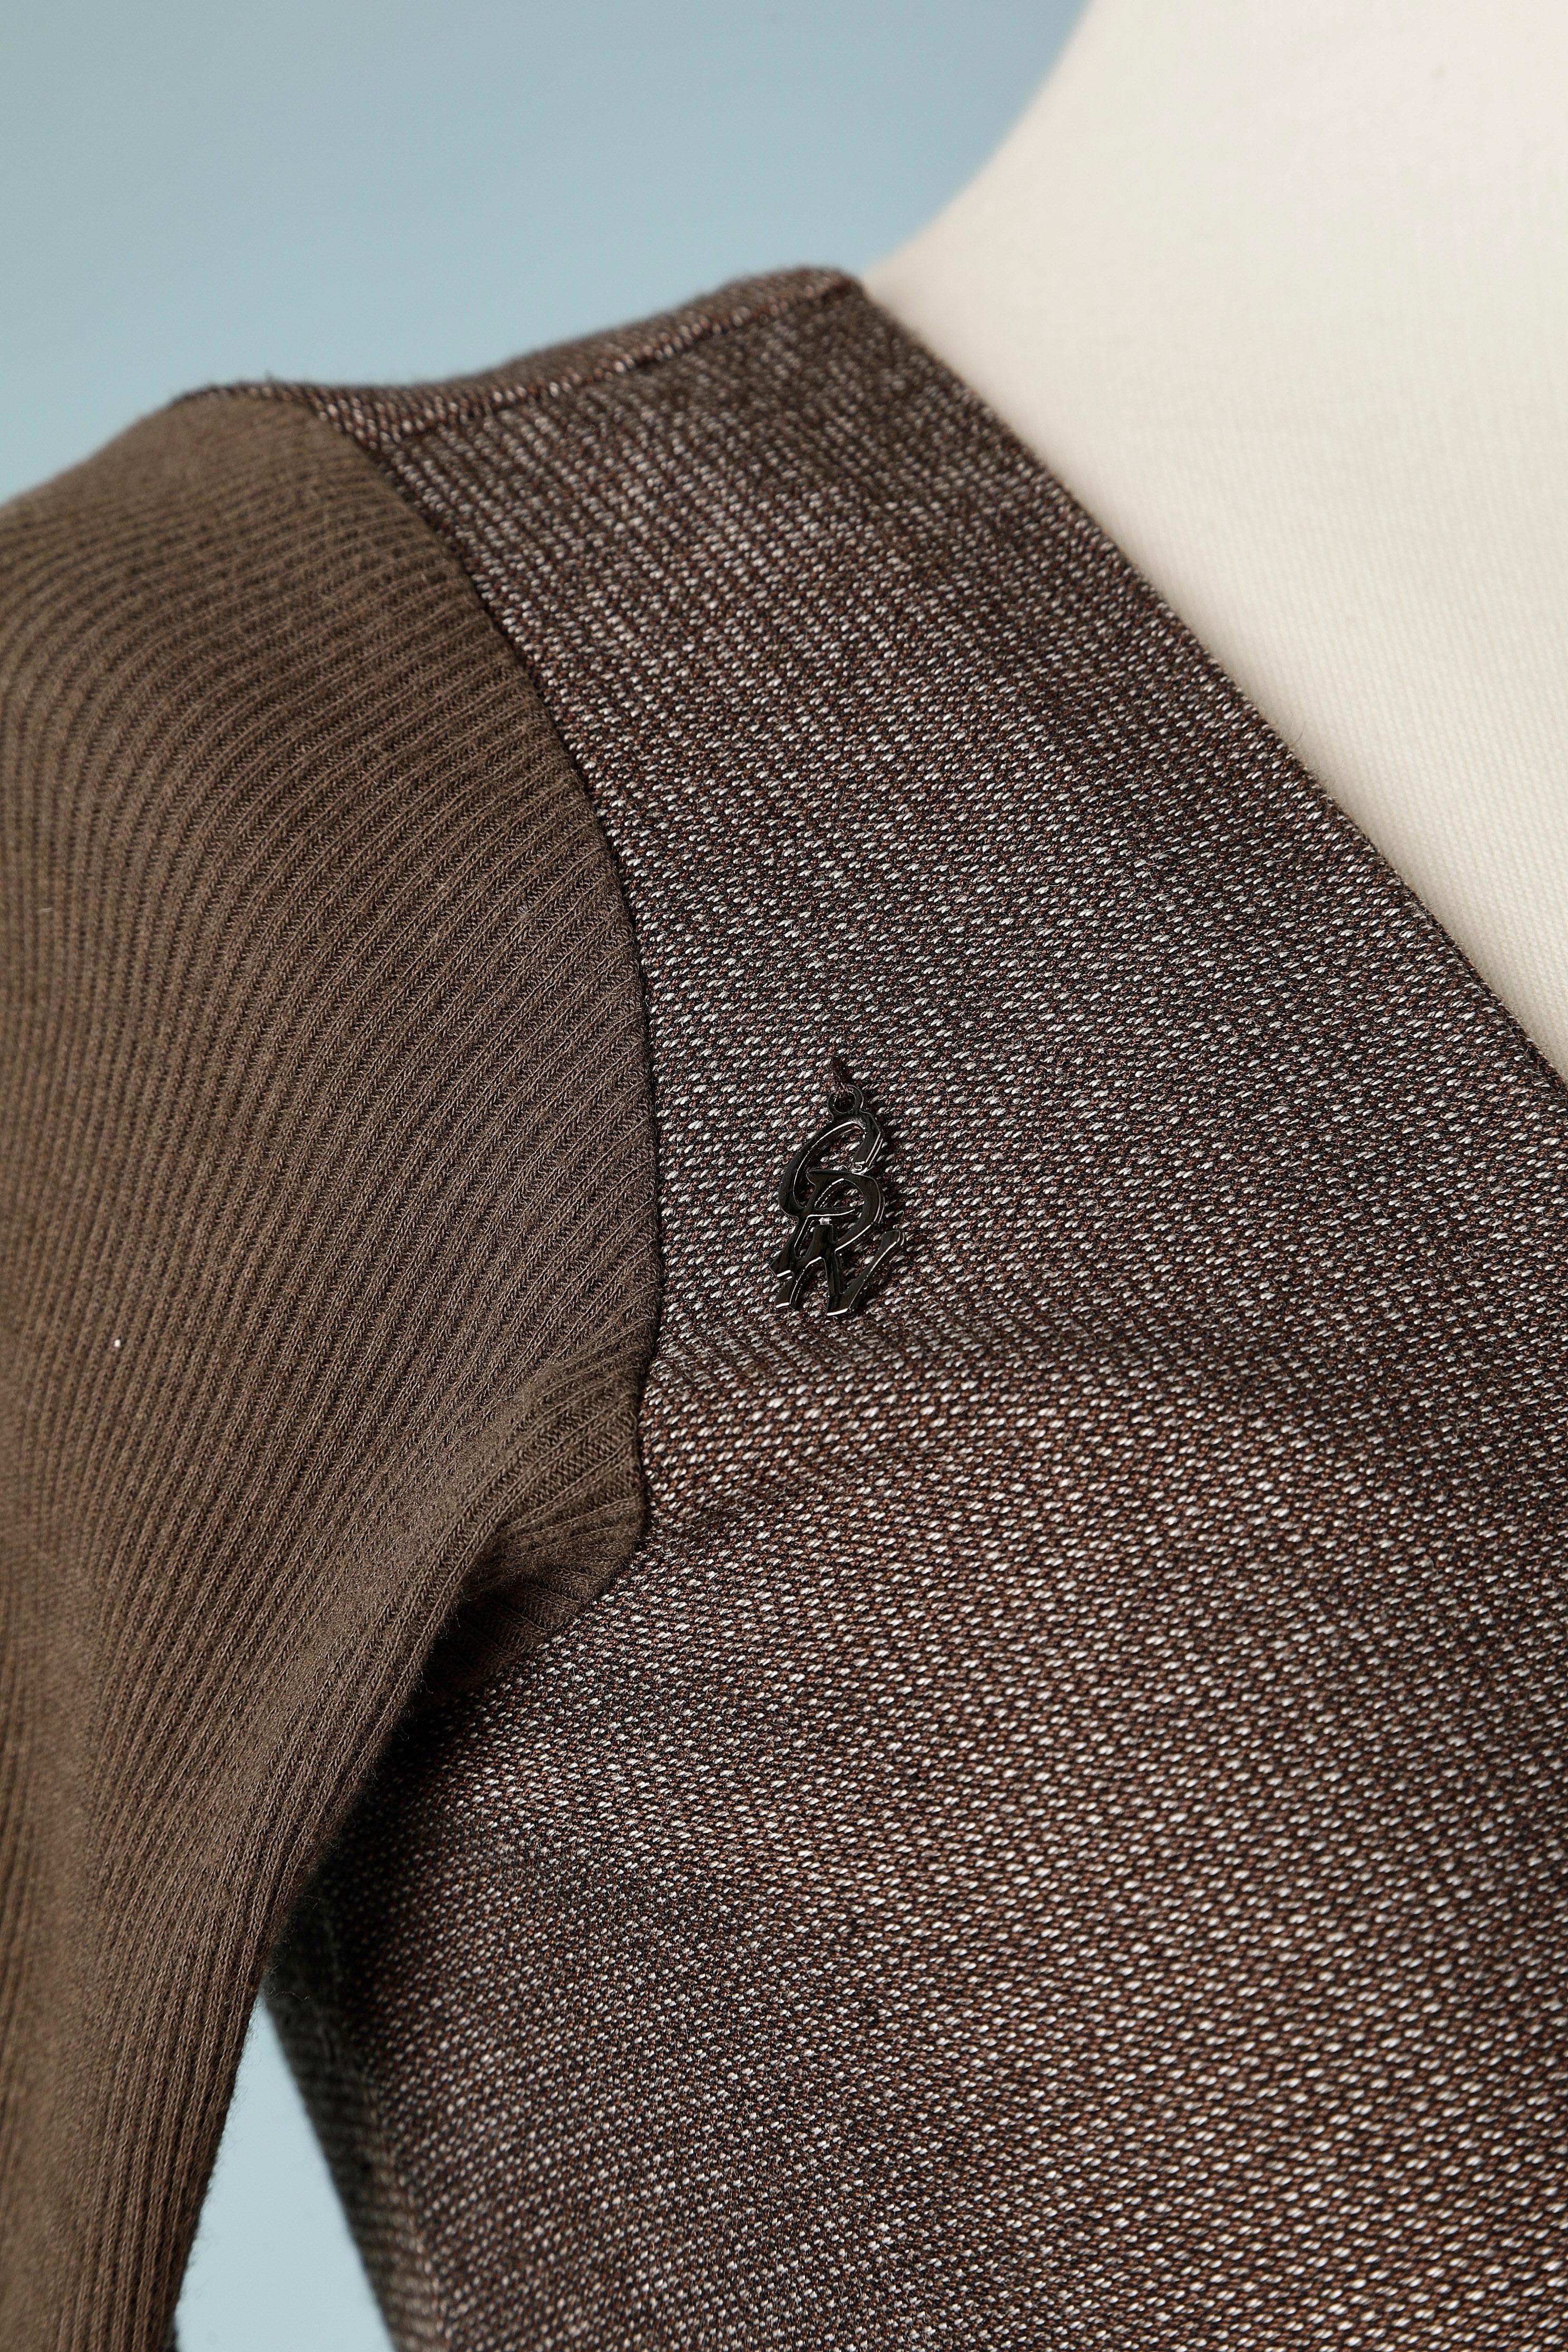 Braunes Jerseykleid mit Spitzenrüschen in der vorderen Mitte. Kleine CDN-Marke auf der rechten Schulter. Zusammensetzung des Stoffes: 65% Polyester, 33% Viskose, 2% Elasthan
Größe S